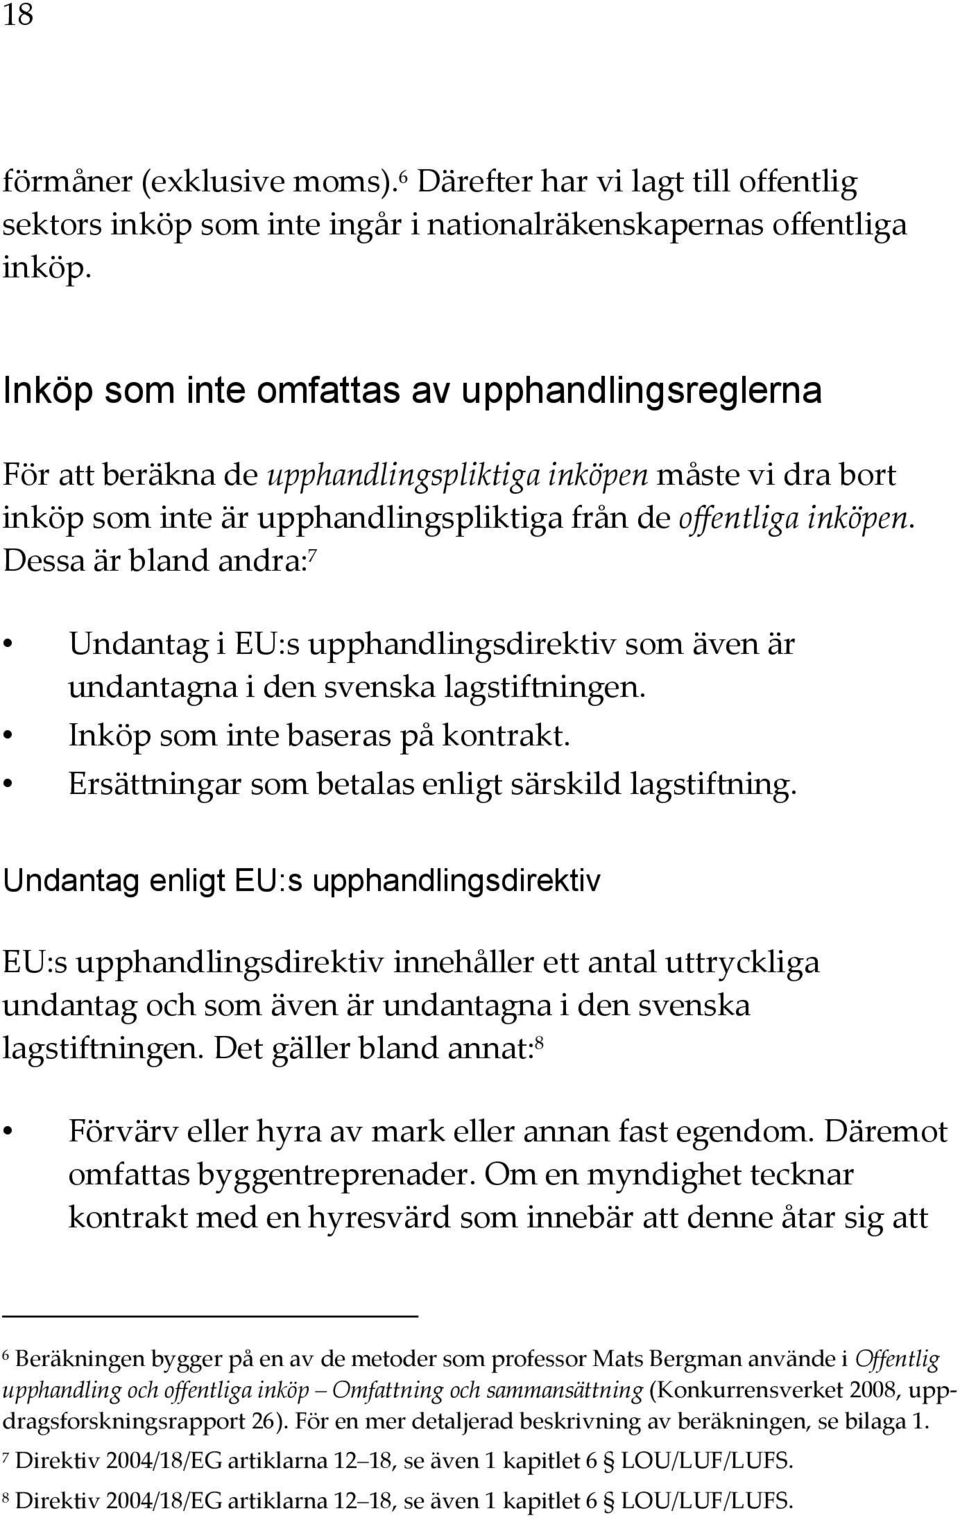 Dessa är bland andra: 7 Undantag i EU:s upphandlingsdirektiv som även är undantagna i den svenska lagstiftningen. Inköp som inte baseras på kontrakt.